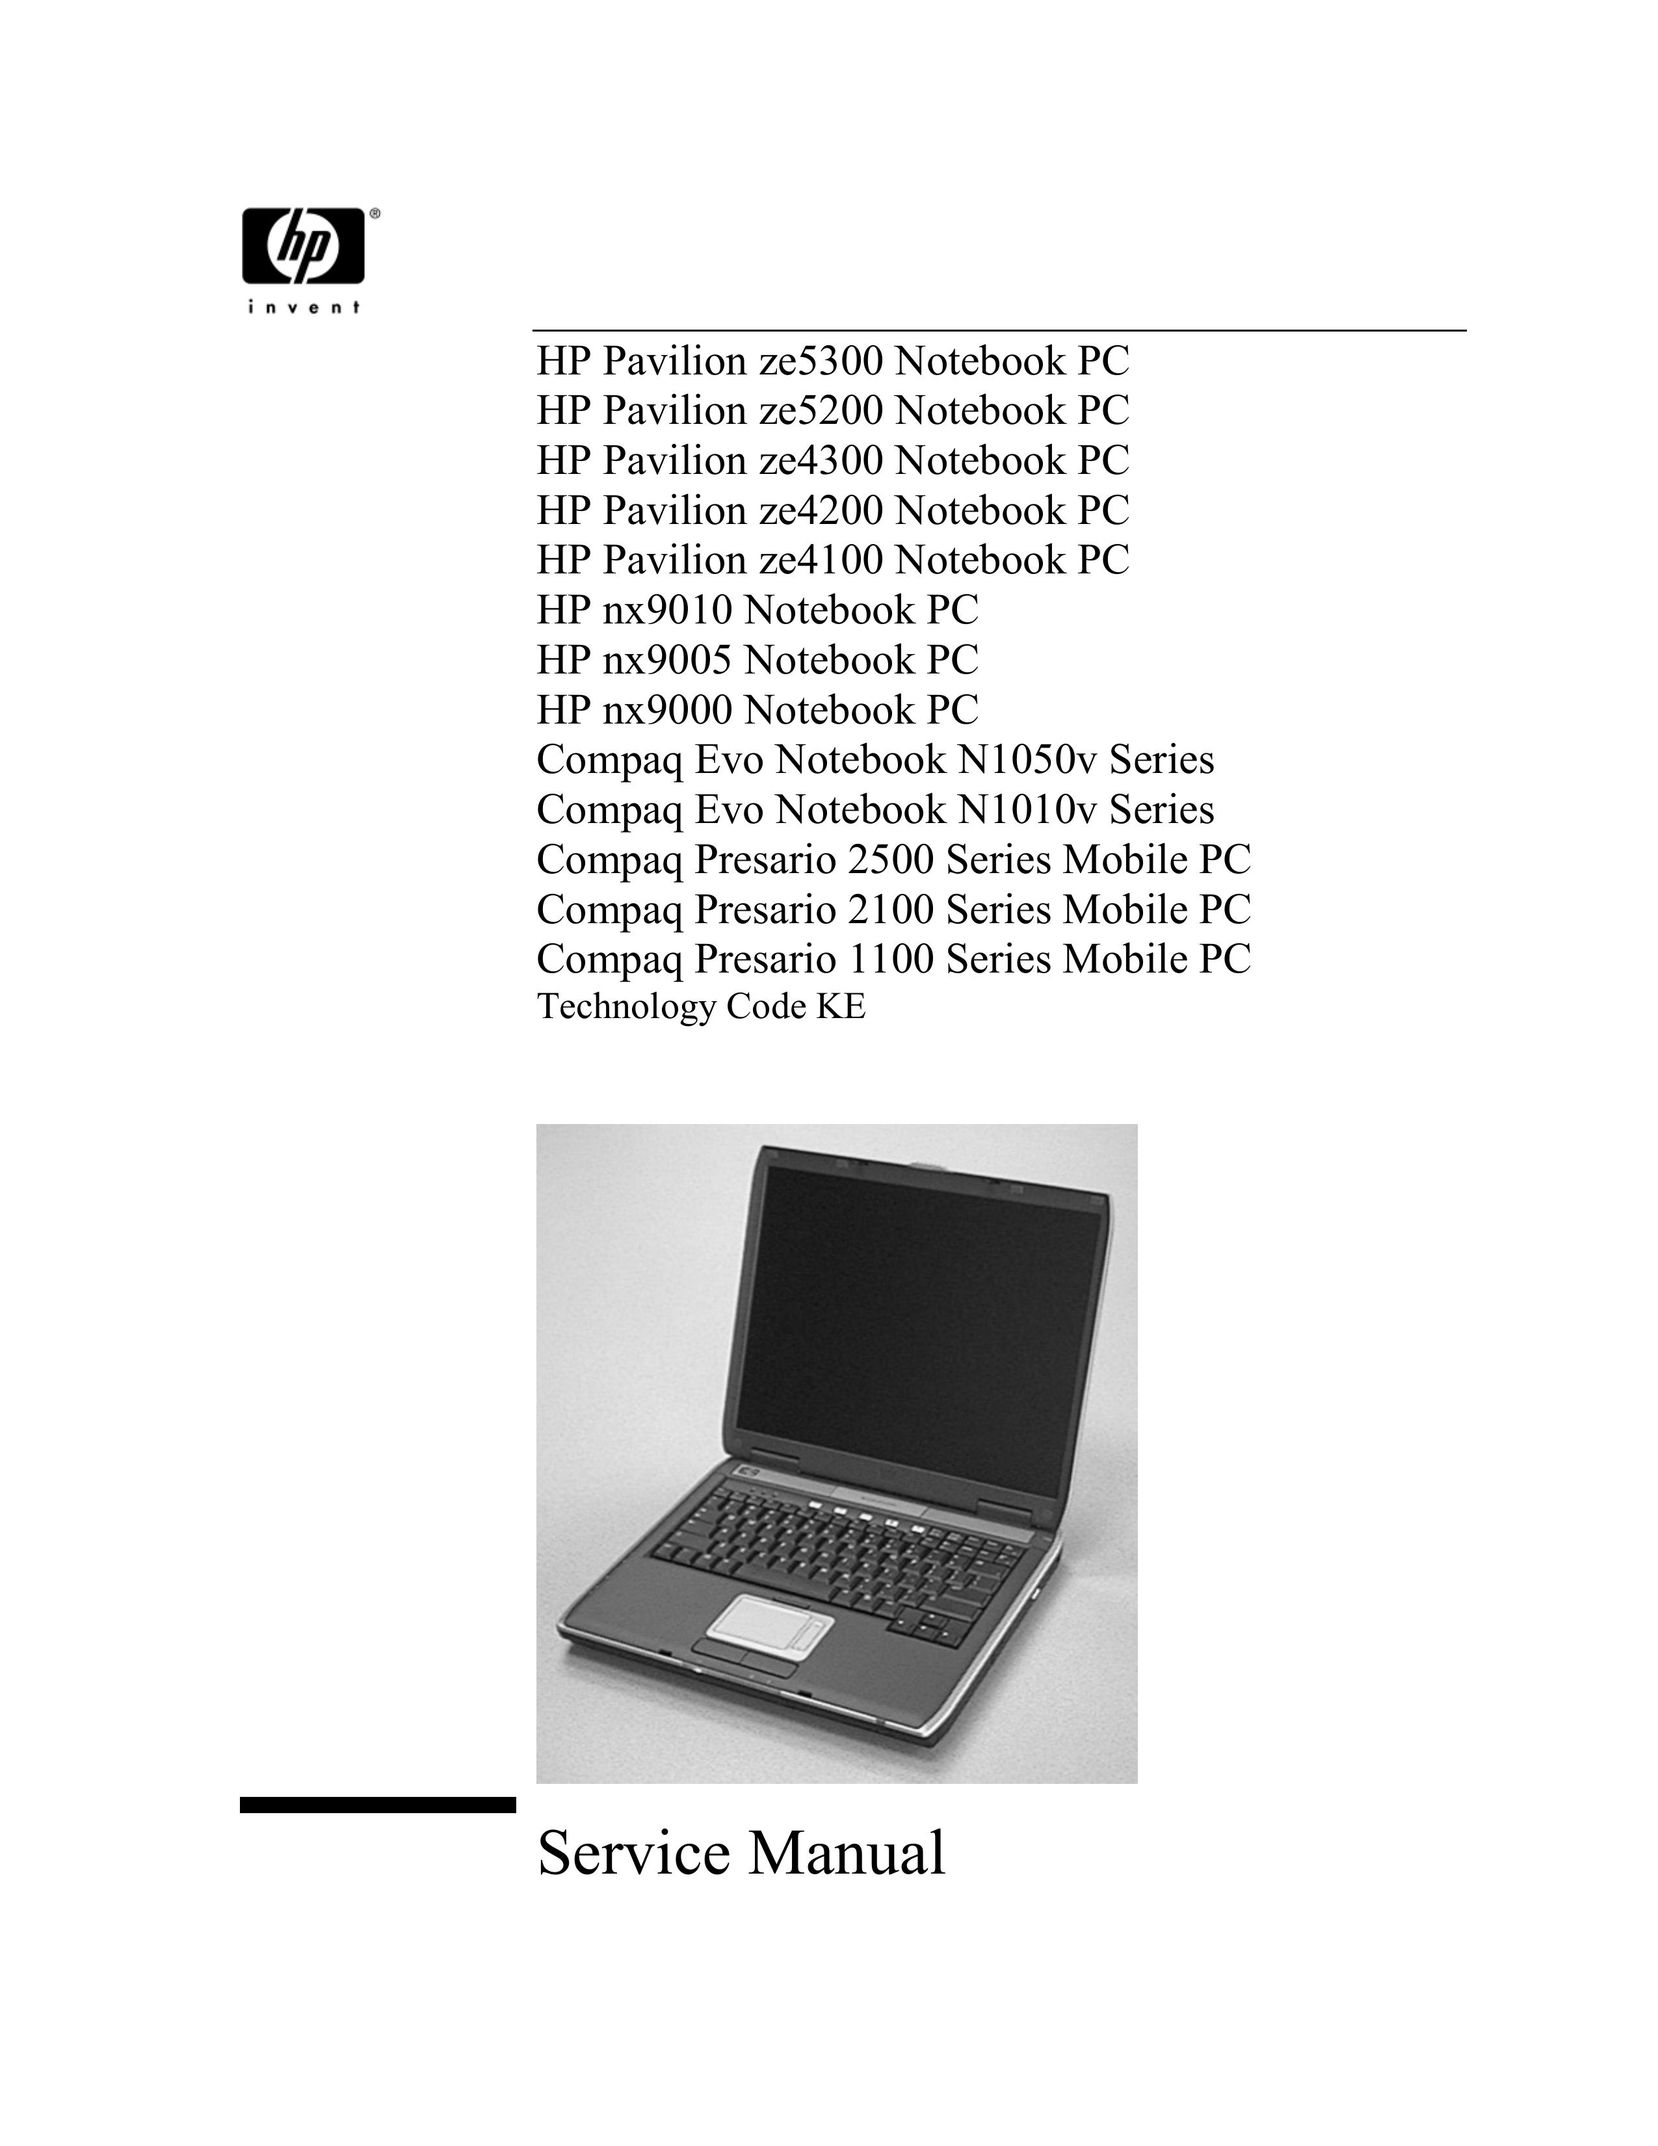 HP (Hewlett-Packard) 2100 Laptop User Manual